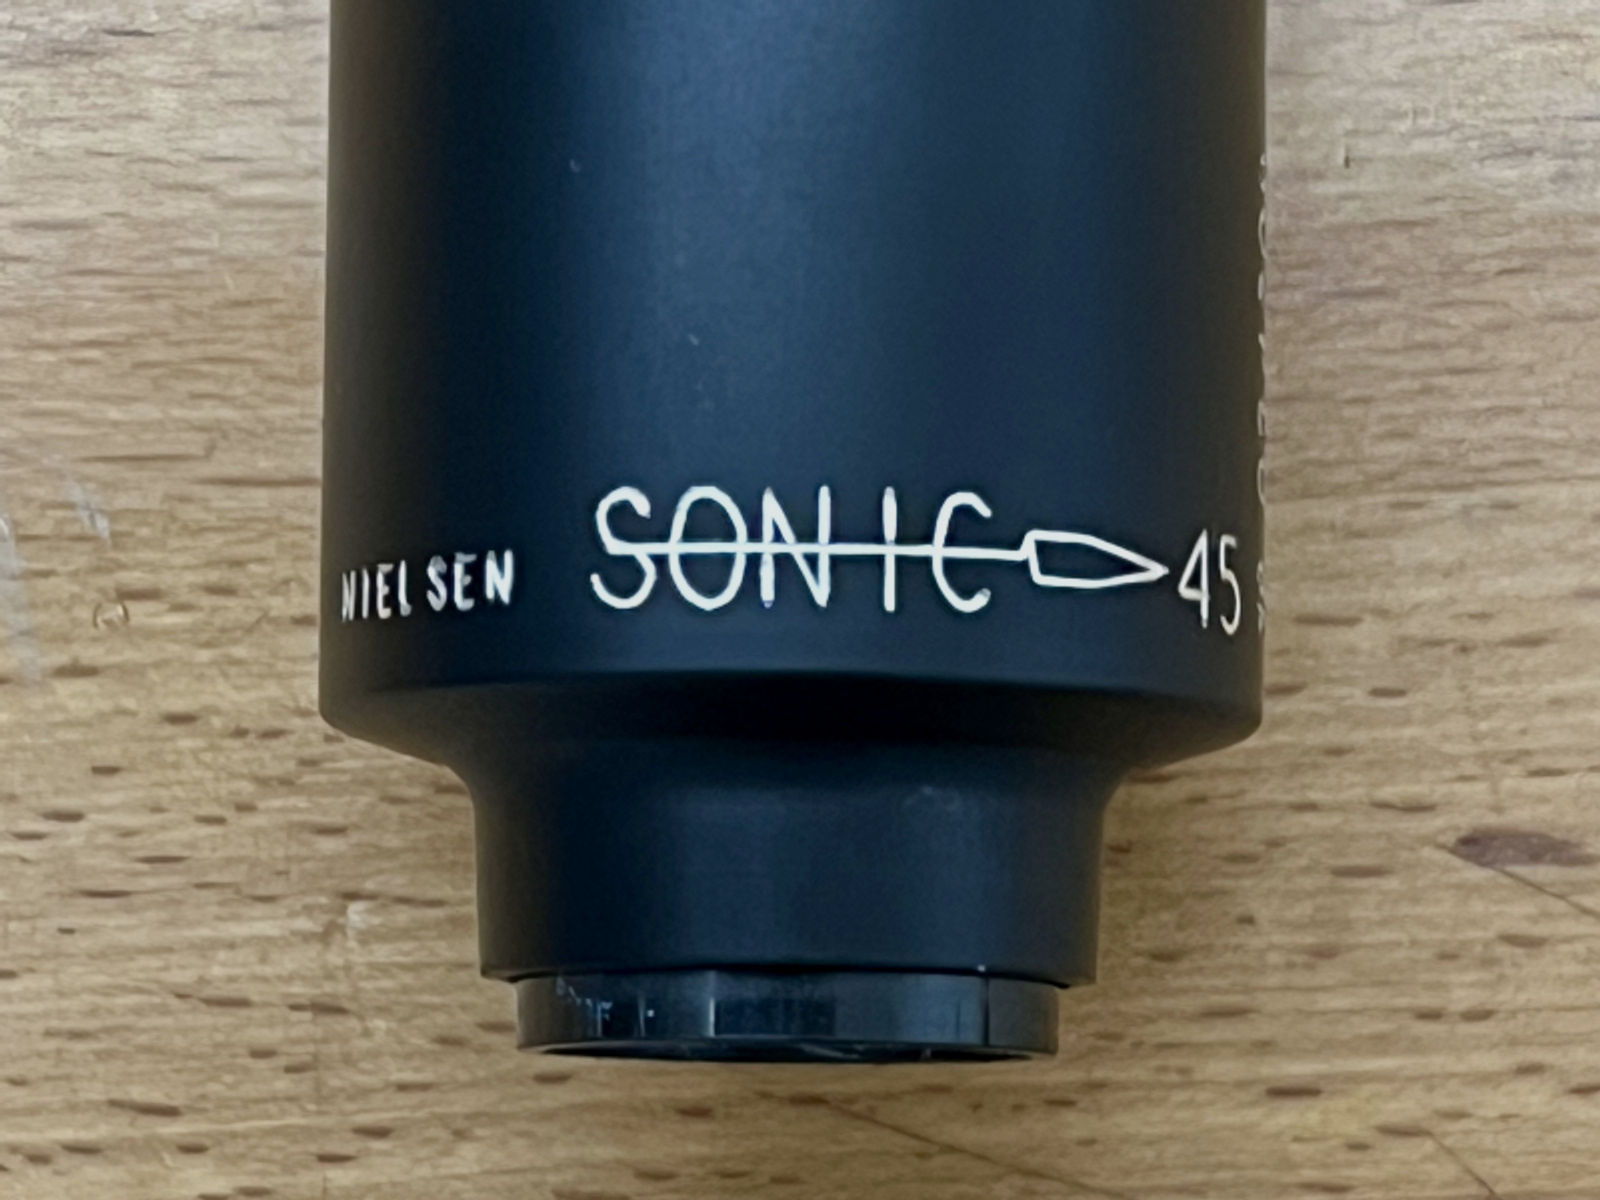 Schalldämpfer Nielsen Sonic 45. .308Win / .30-06, 5/8x24 UNEF